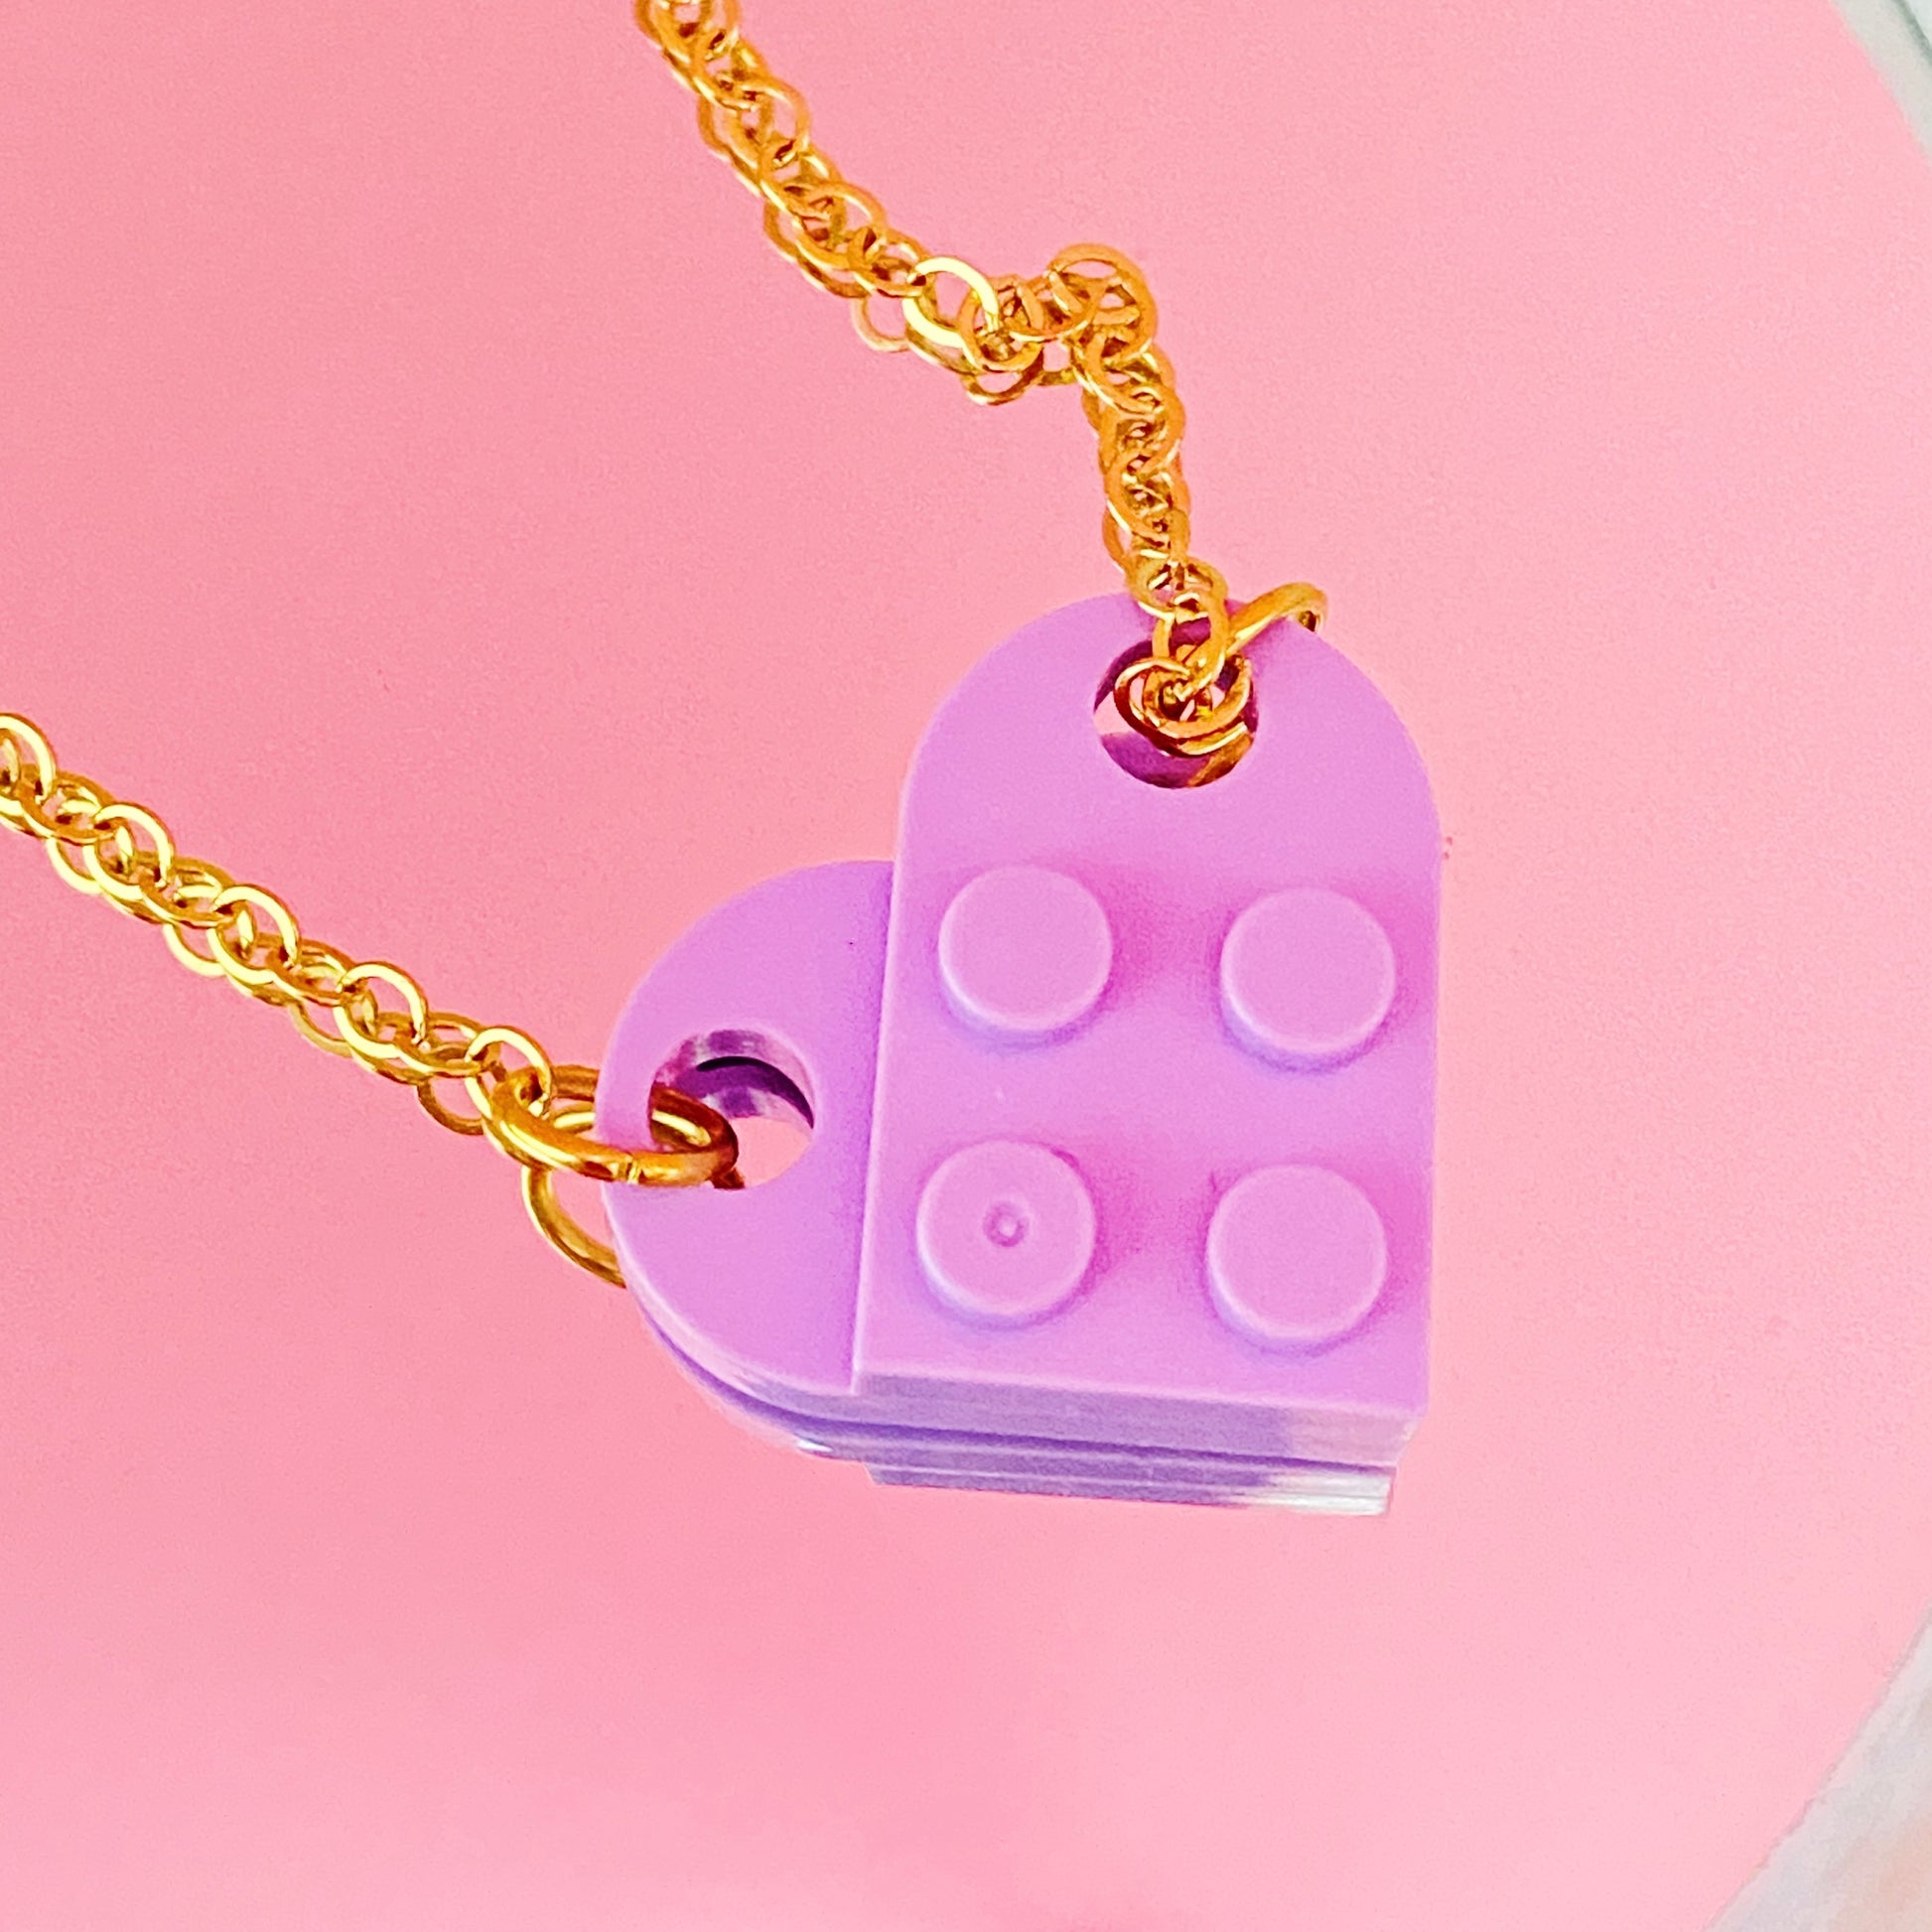 Lila Lego Heart Necklace - ROCKmint